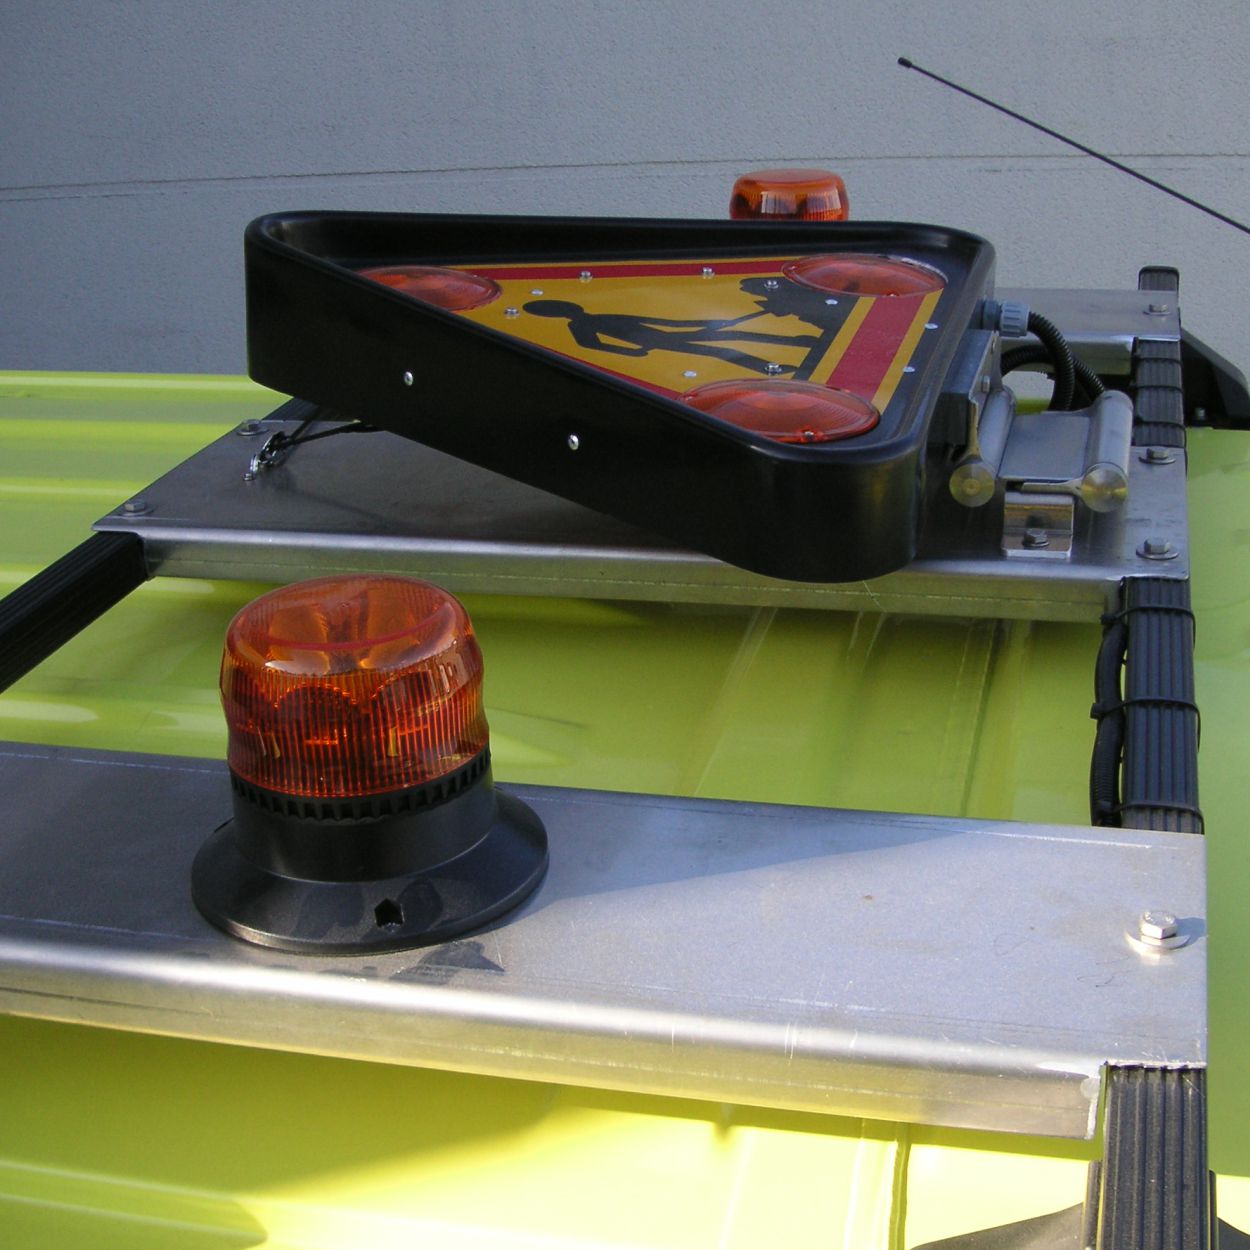 Gyrophare et Triflash sur toit d'un véhicule